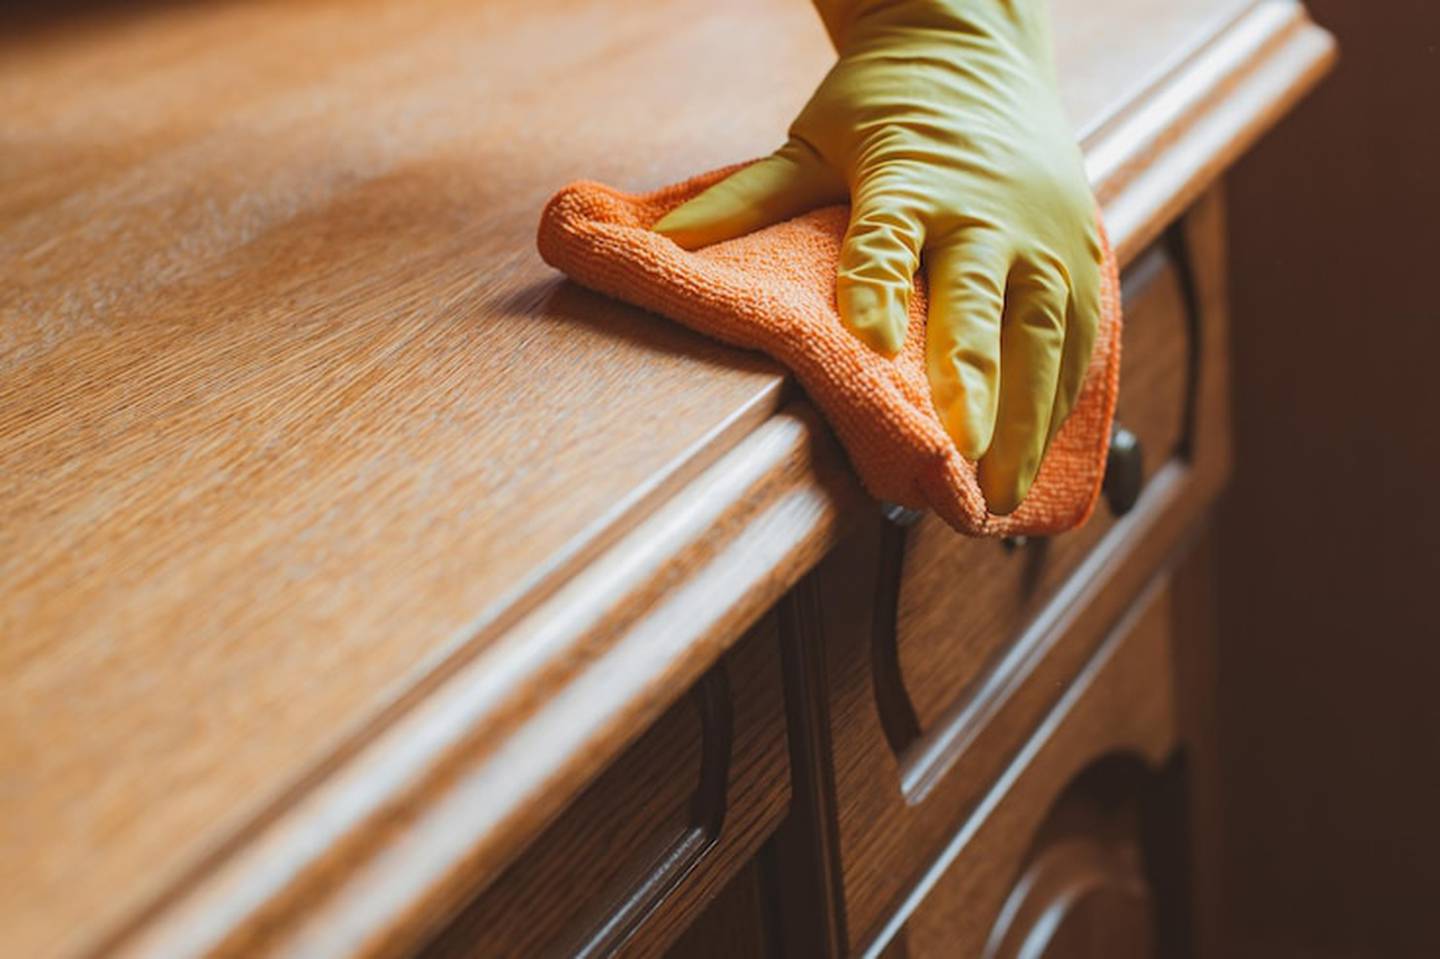 Aprenda como usar azeite e vinagre para limpar os móveis de madeira de sua casa